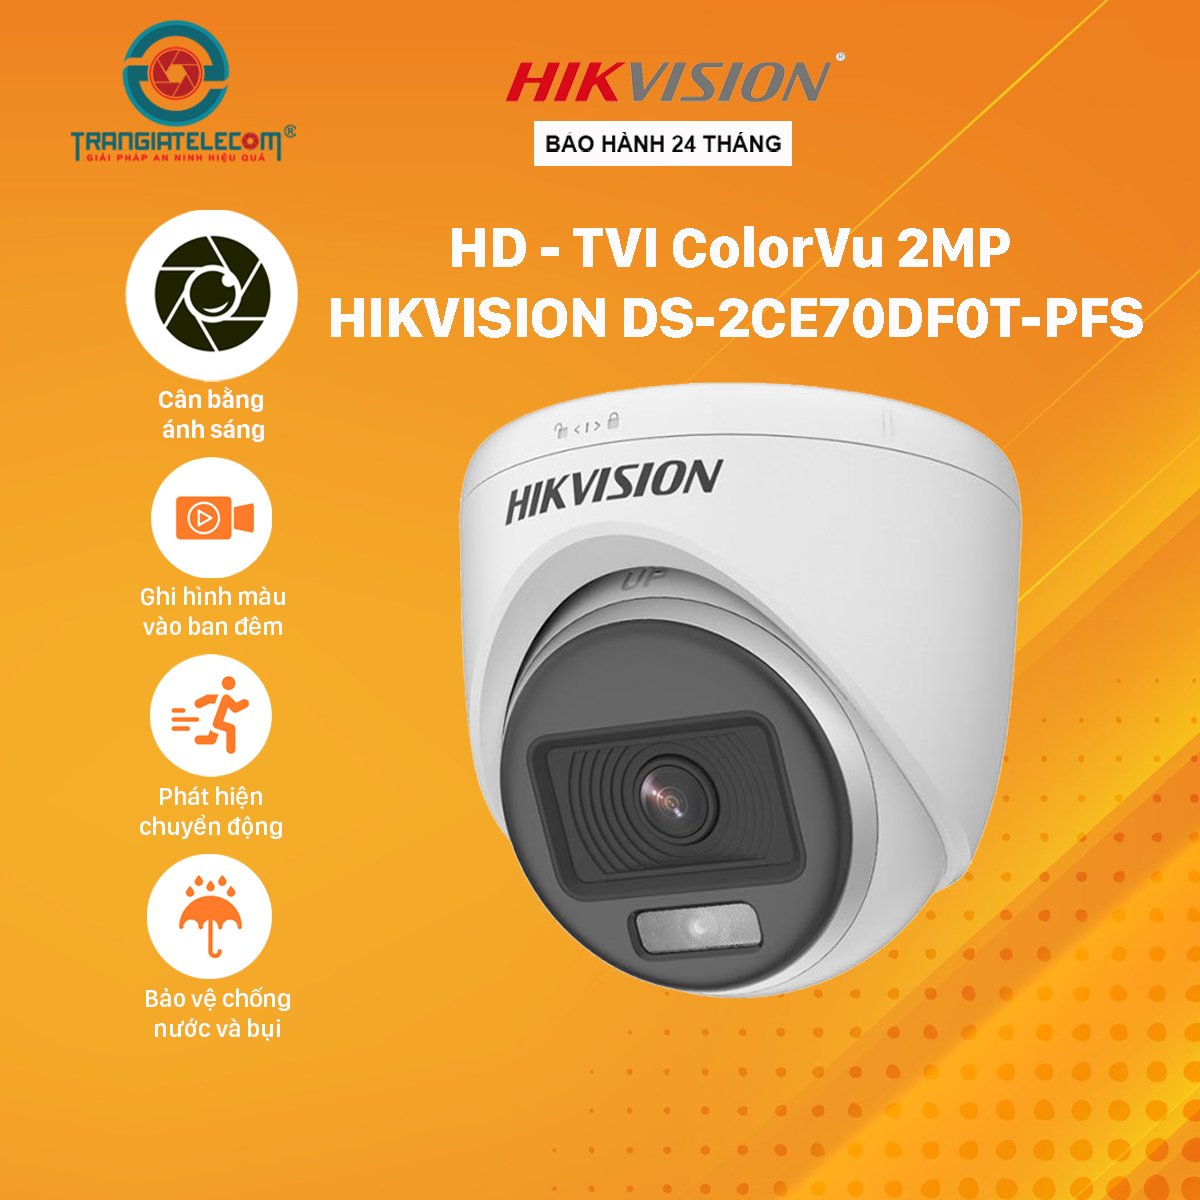 Camera Analog Hikvision ColorVu DS-2CE70DF0T-PFS Có Mic Thu Âm - Hàng chính hãng